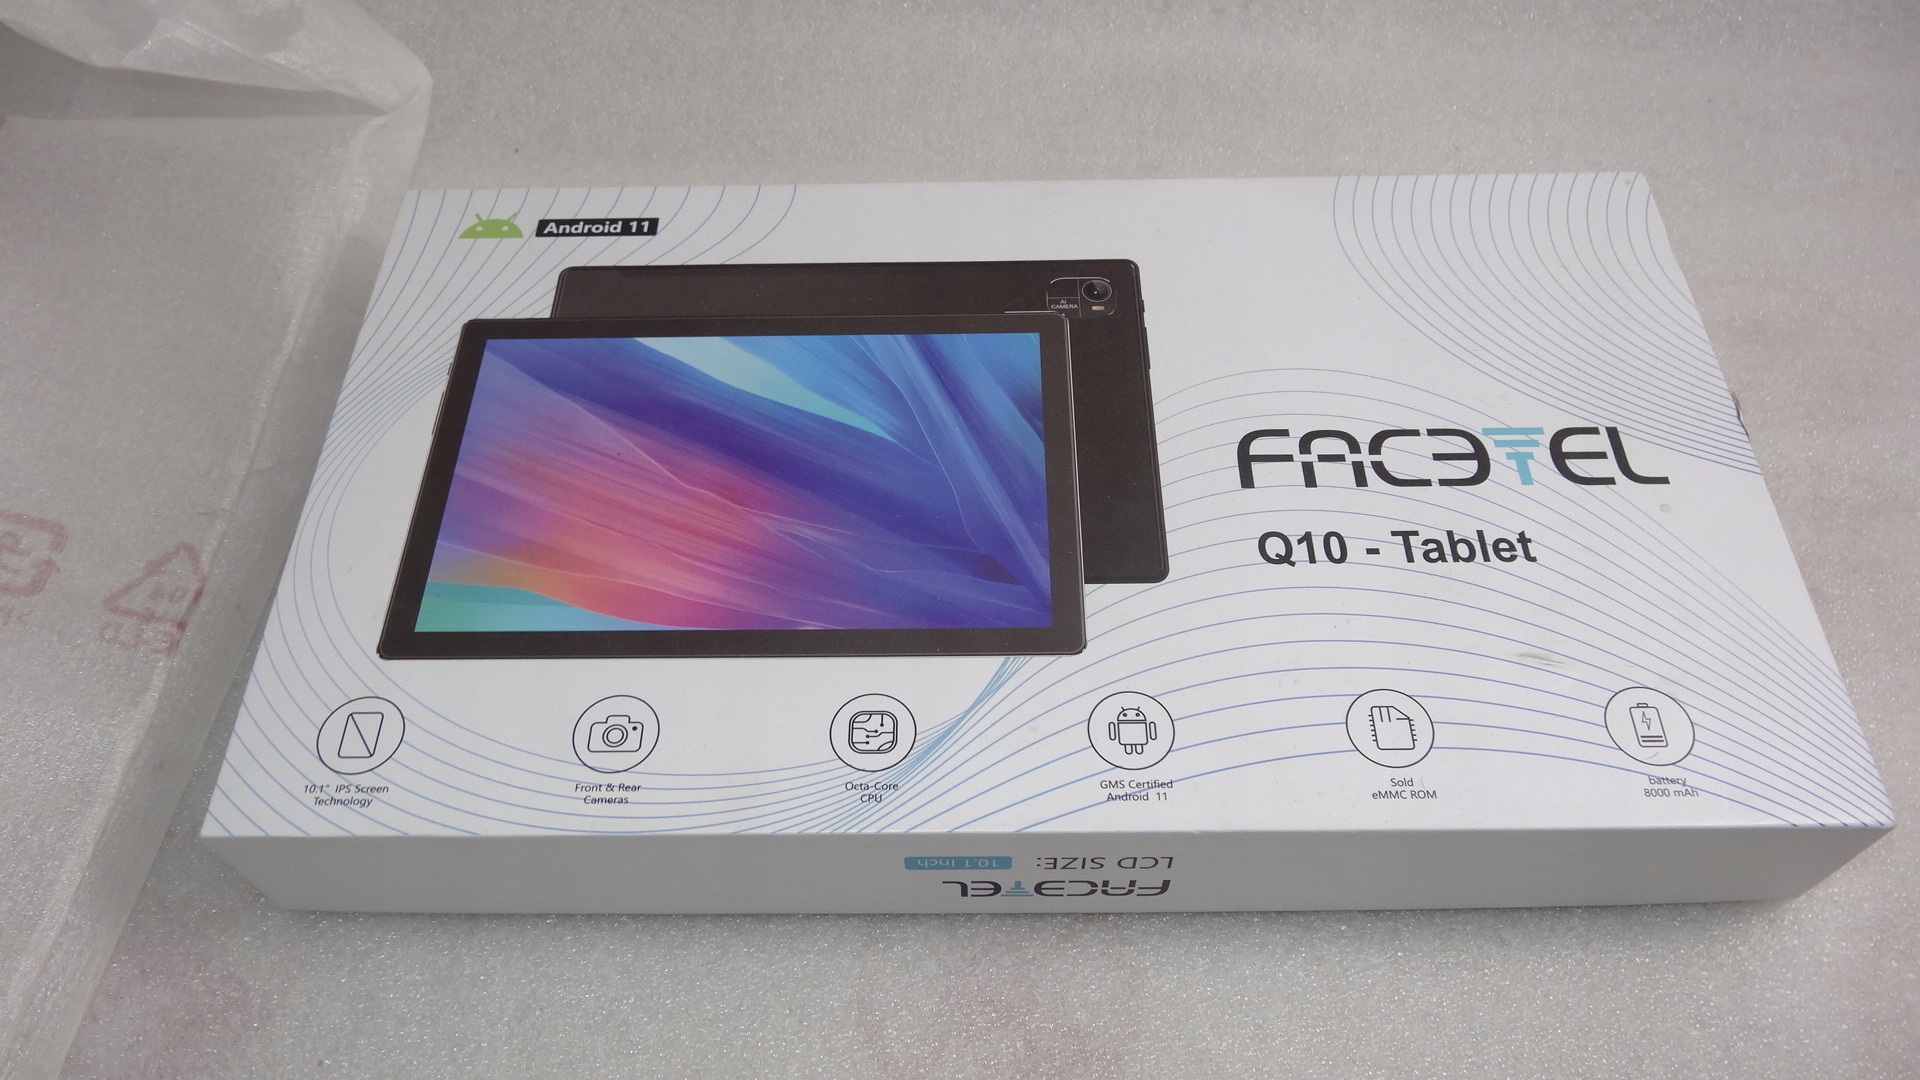 Facetel Q10 - Tablet